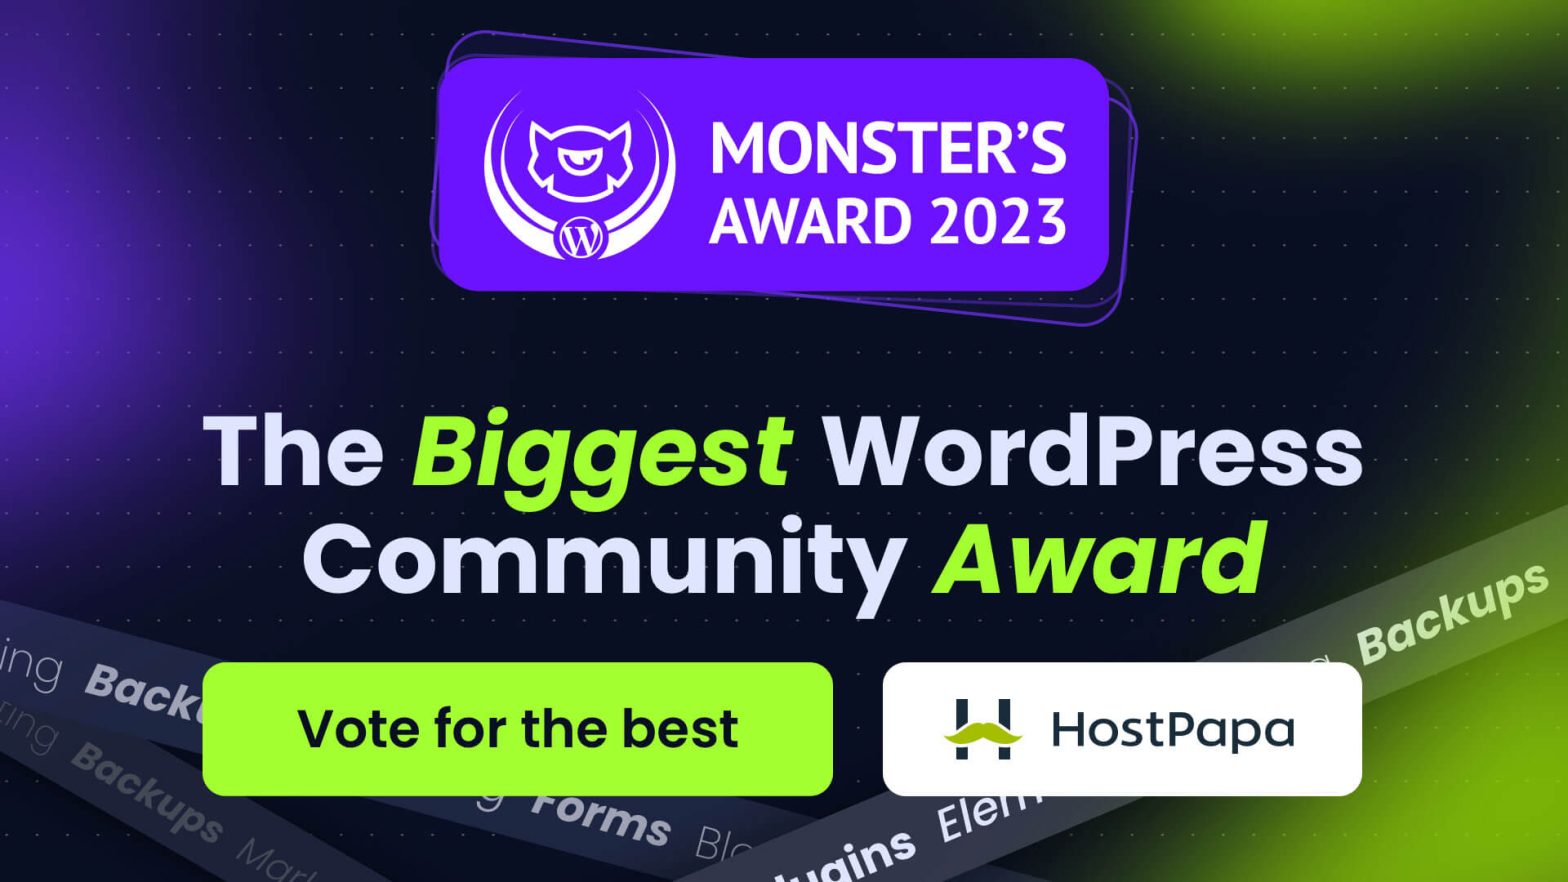 Monster_s-Award-2023-HostPapa-Named-Among-the-Best-WordPress-Hosting-Providers_Header